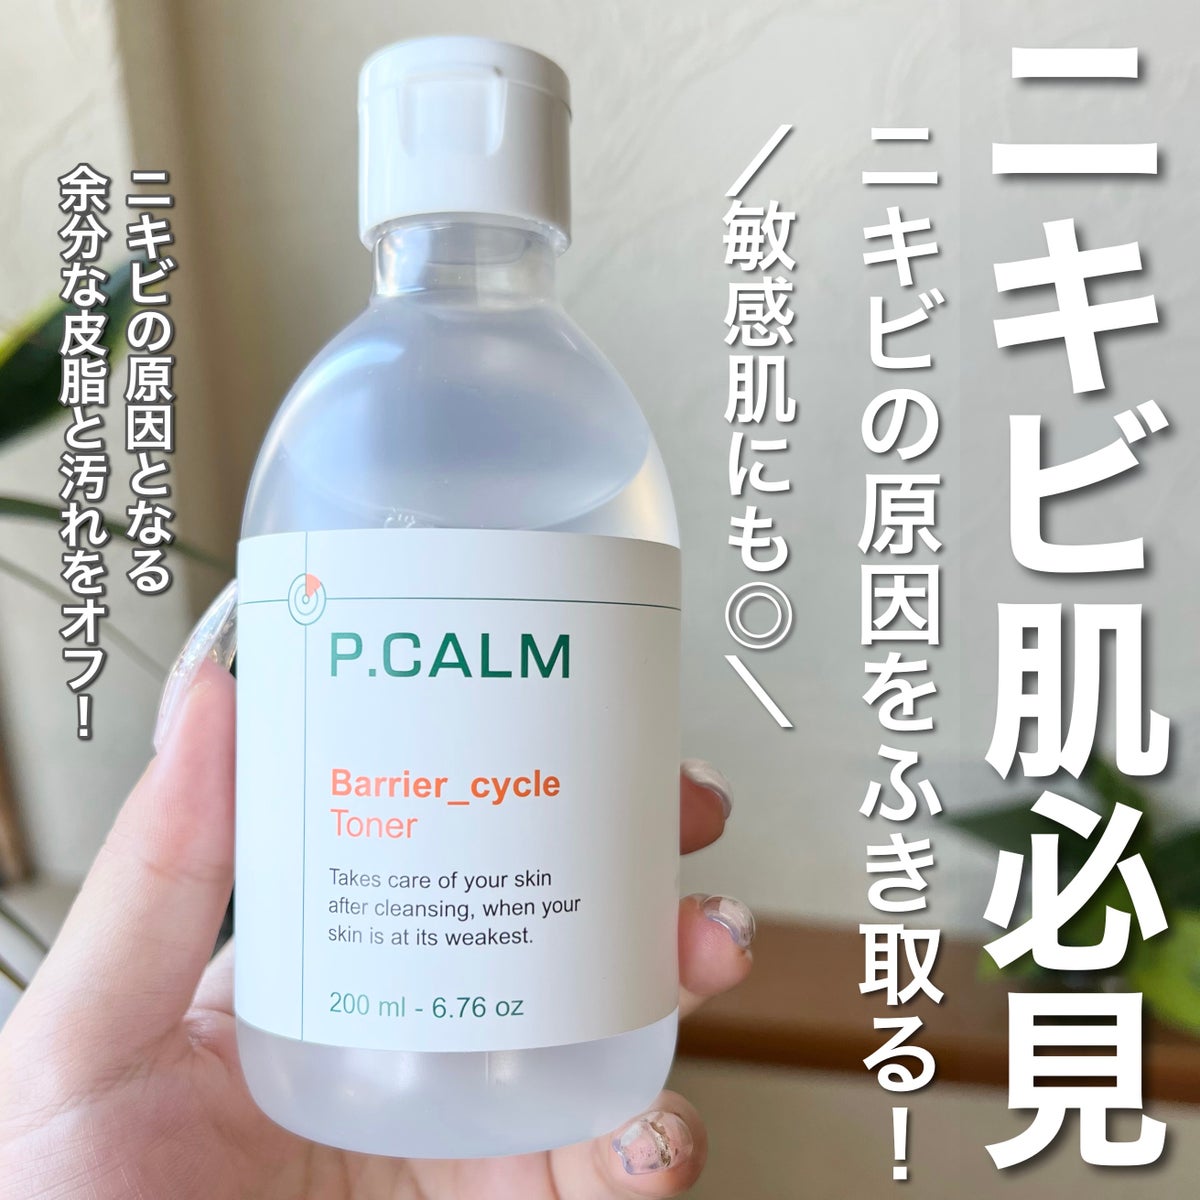 どくだみ 化粧水 拭き取りトナー ニキビケア 鎮静ケア 韓国スキンケア 化粧水